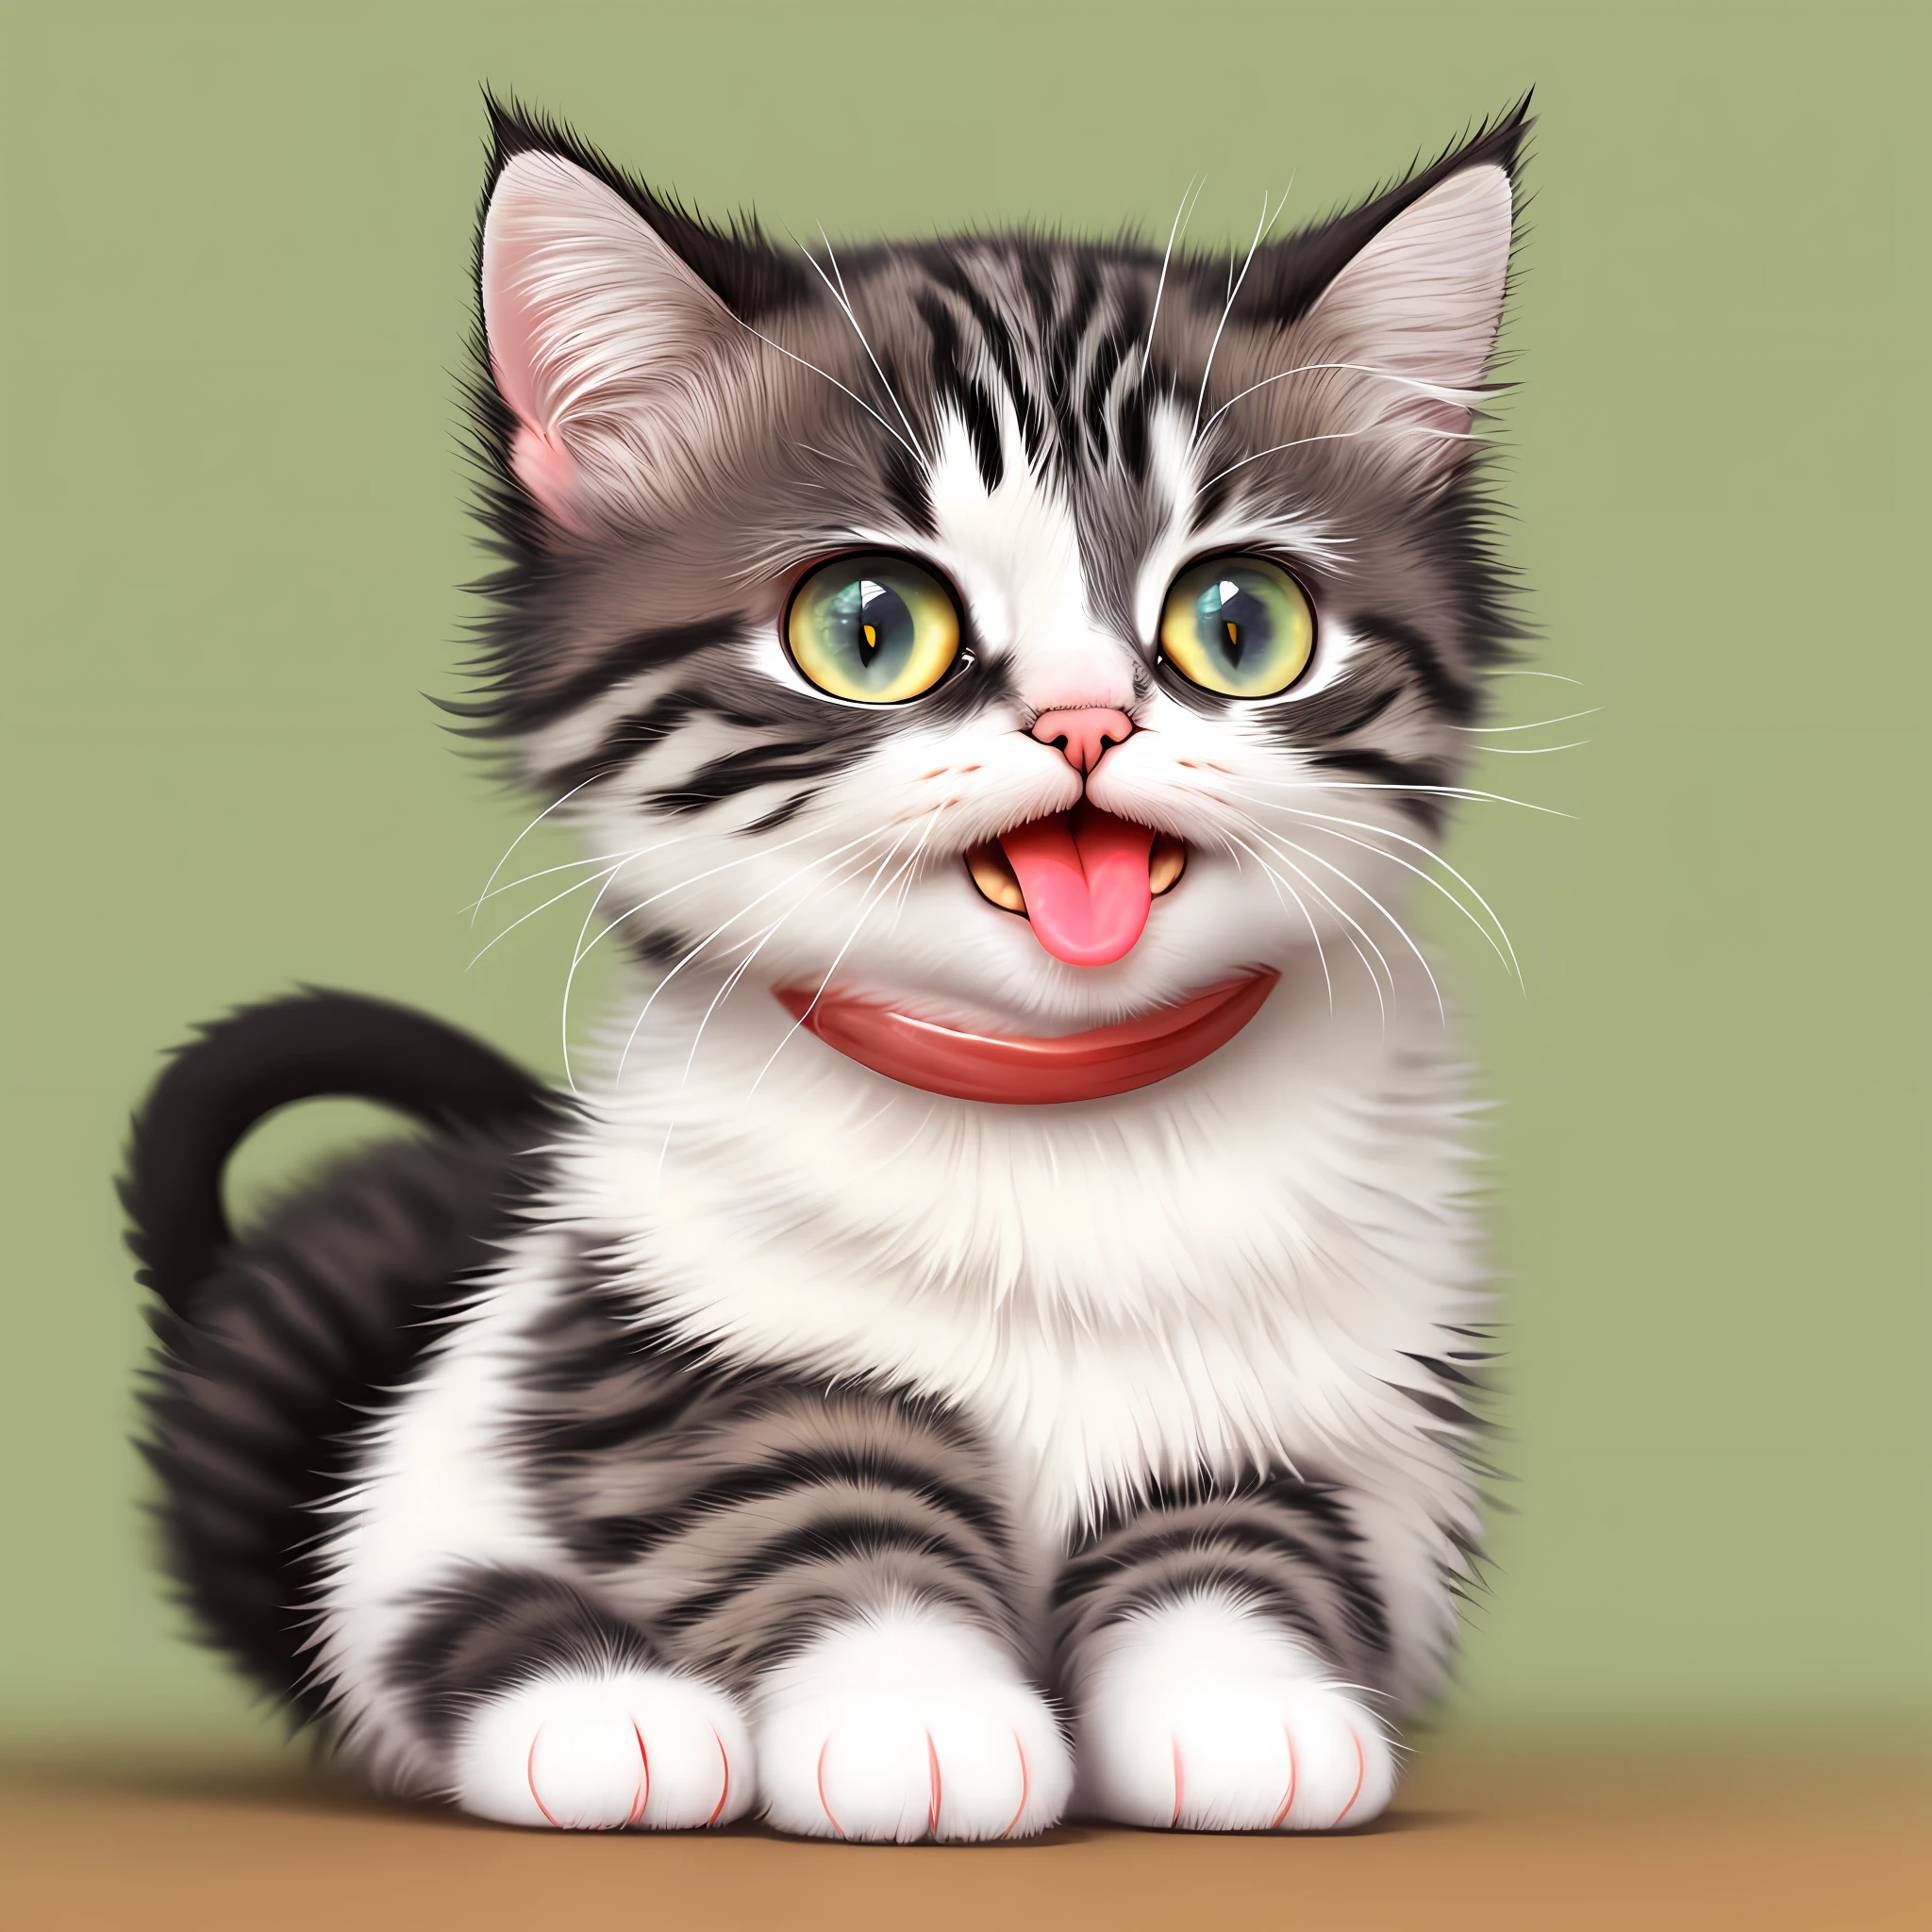 Hay un gato sentado con la lengua fuera., Adorable pintura digital, lindo gato, imitando